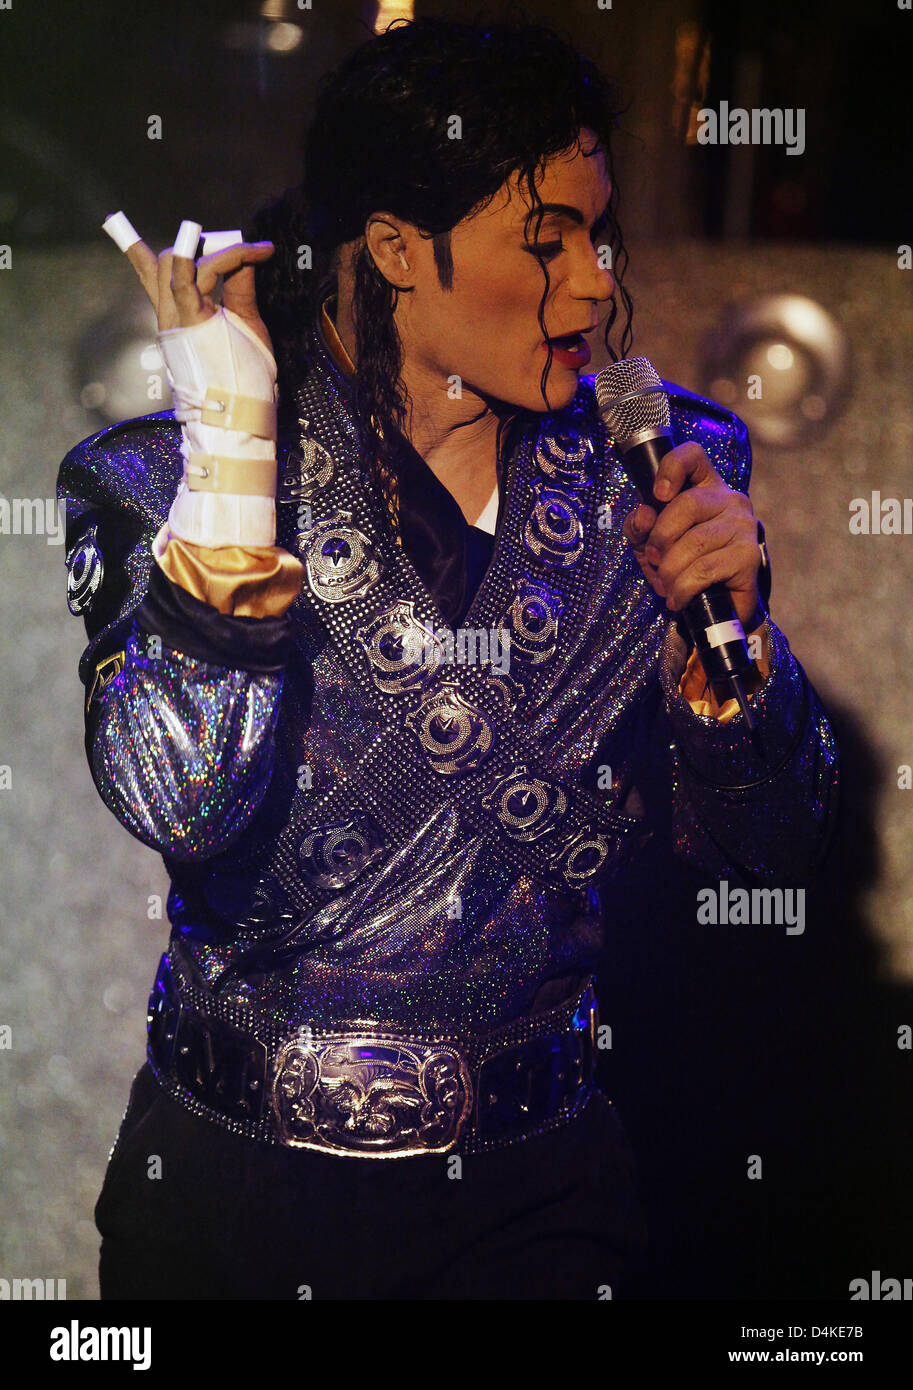 William Hall raddoppia Michael Jackson durante il ?Stelle in Concerto? Spettacolo presso Hotel Estrel di Berlino, Germania, 06 marzo 2009. Foto: Annibale Foto Stock